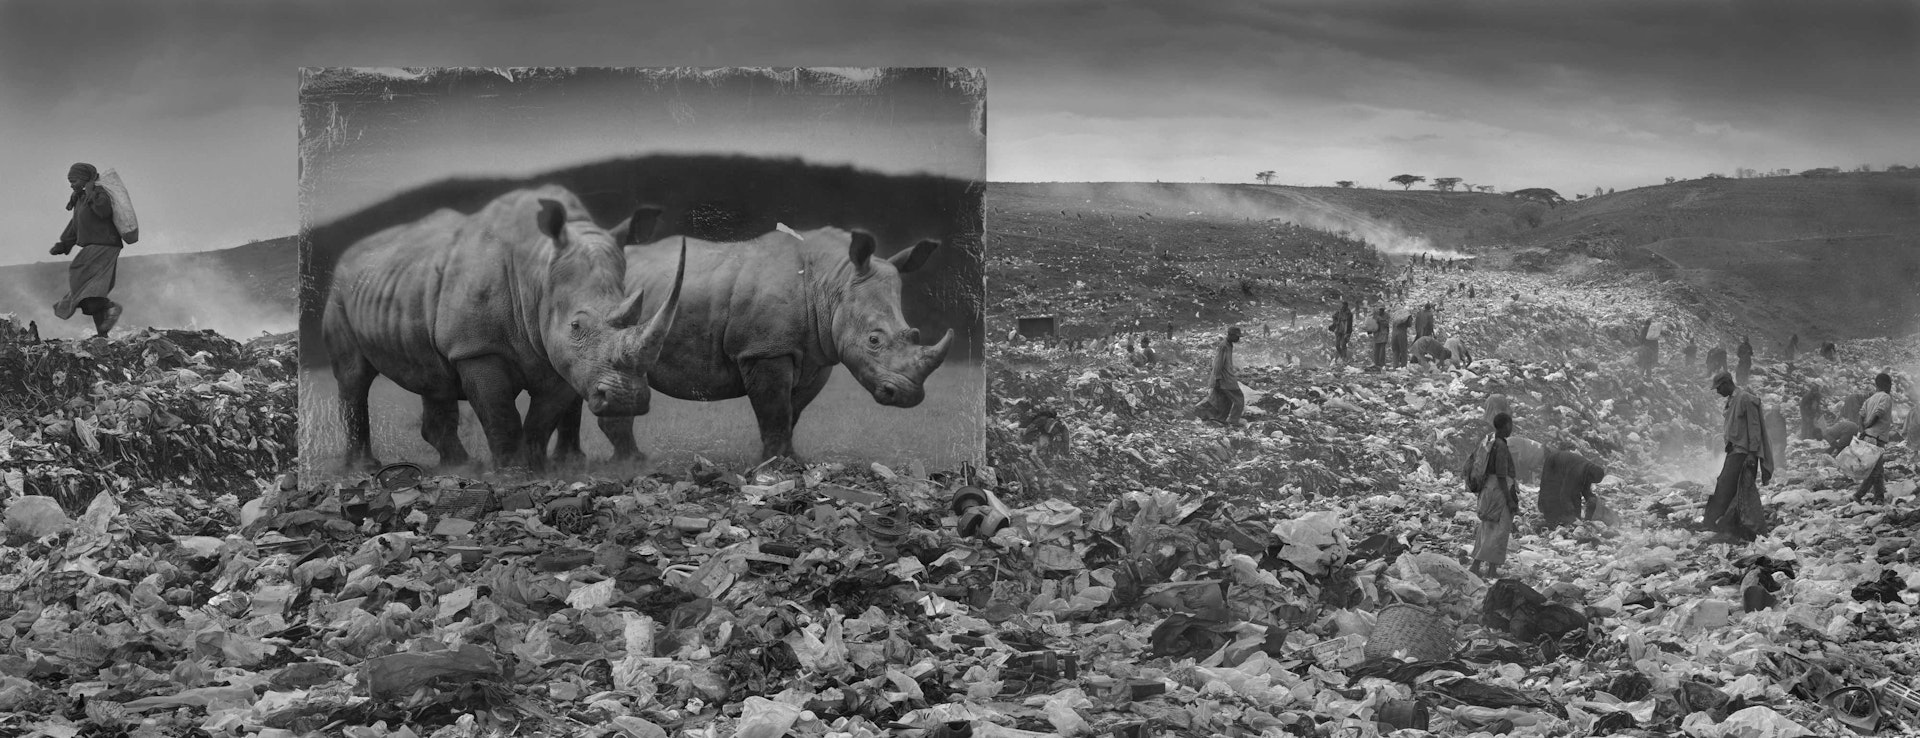 'Wasteland With Rhinos'